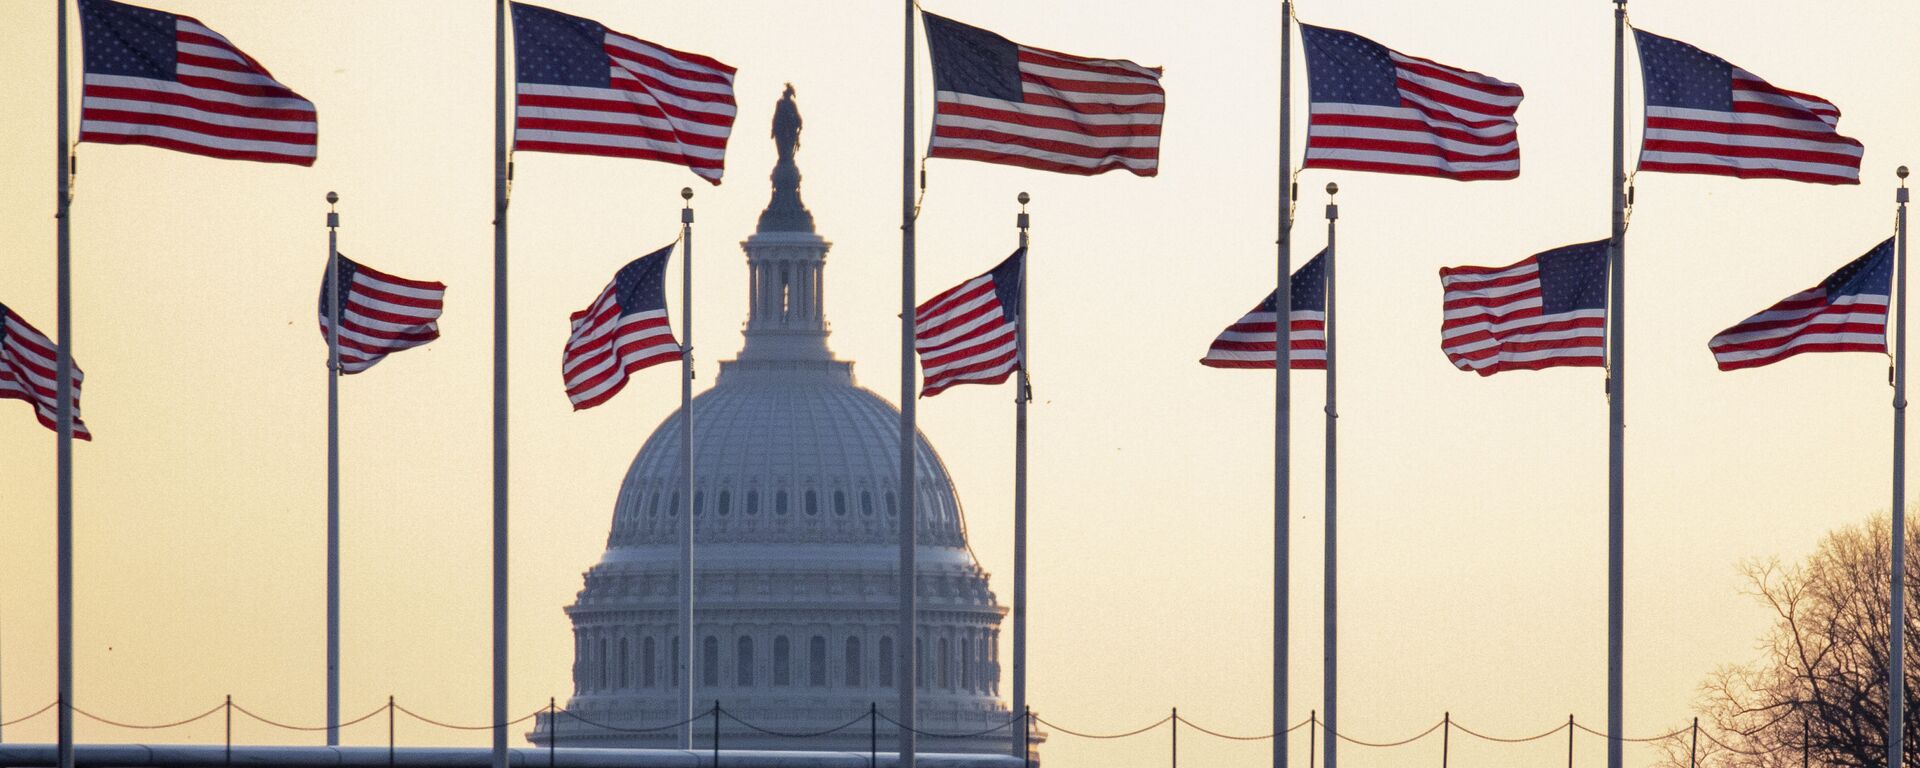 Cờ Mỹ trên nền của Điện Capitol ở Washington, Mỹ - Sputnik Việt Nam, 1920, 09.06.2021